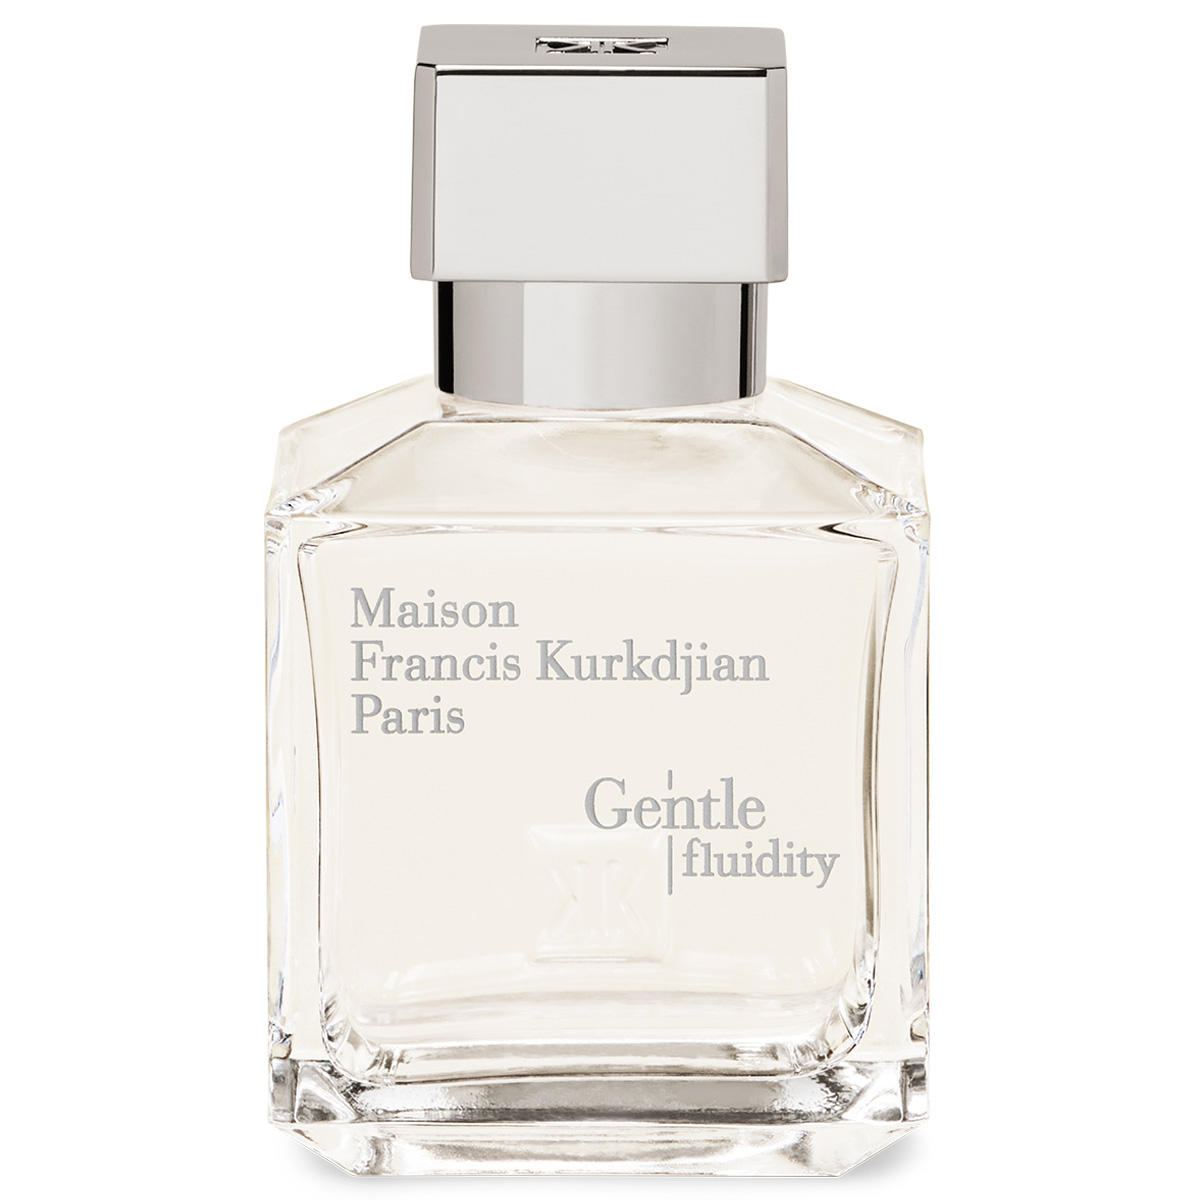 Maison Francis Kurkdjian Paris Gentle fluidity Silver Eau de Parfum  - 1